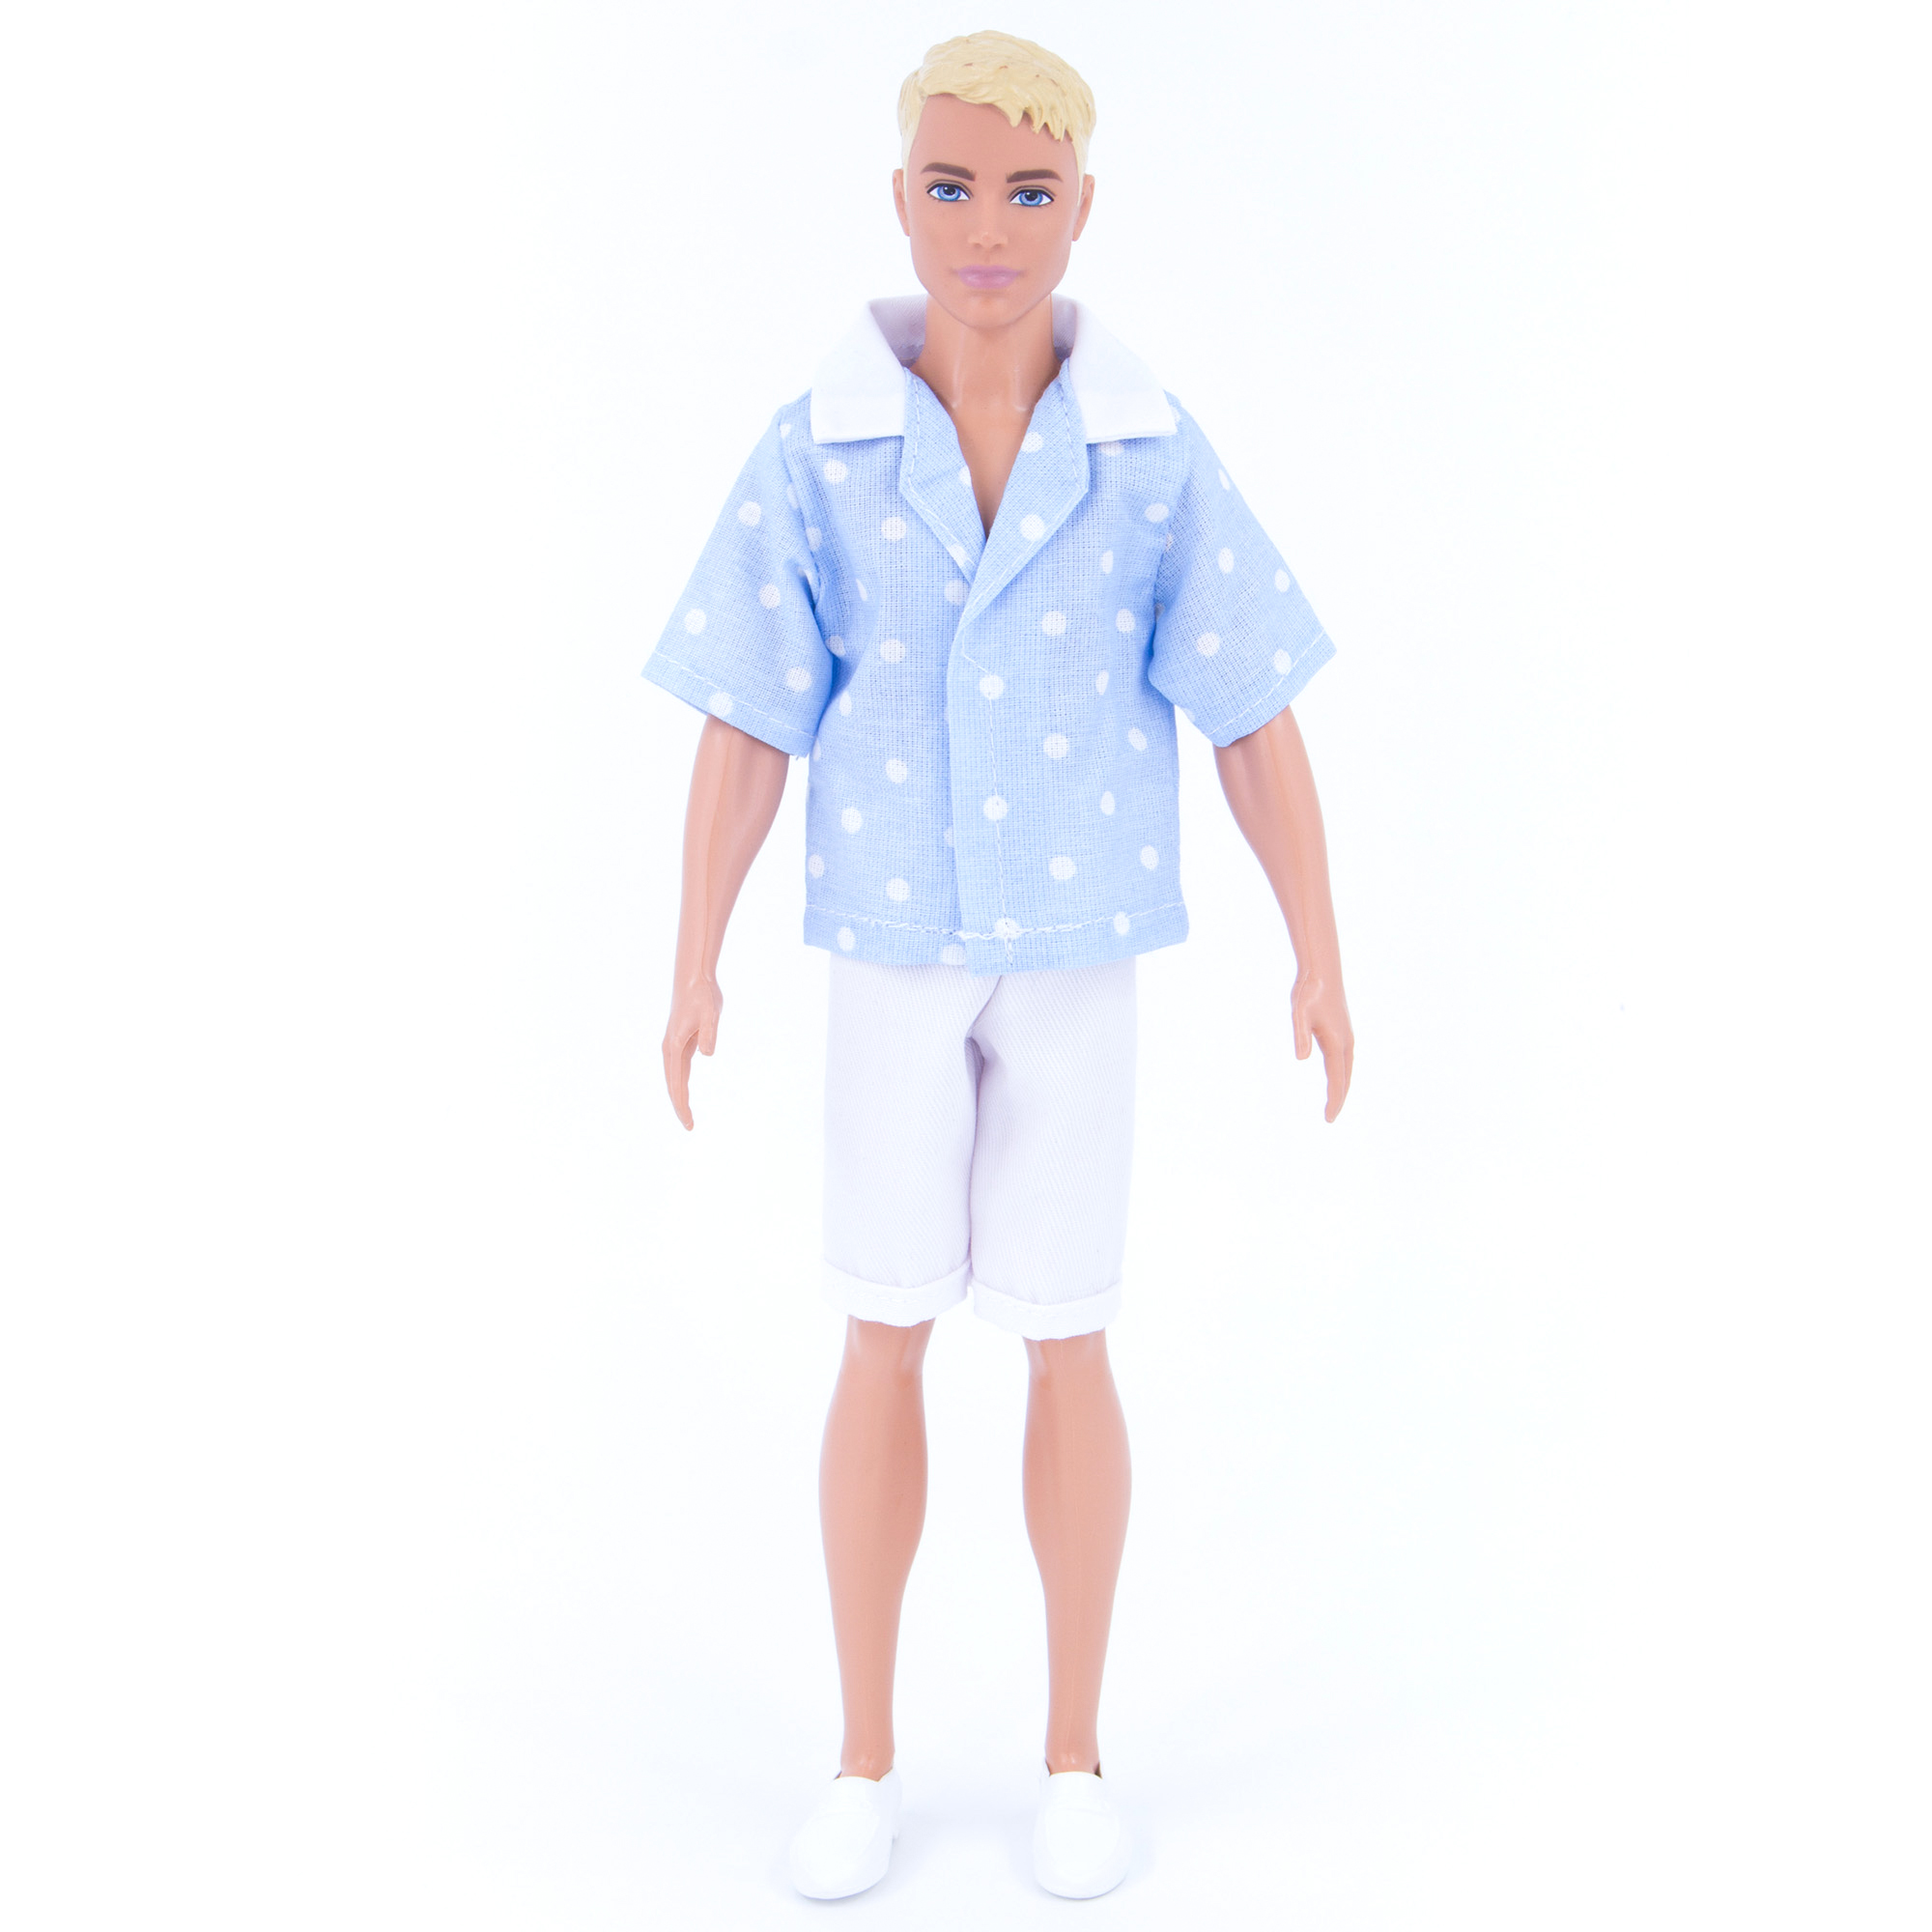 Набор летней одежды Модница для куклы 29-30 см голубой-белый 1417голубой-белый - фото 1